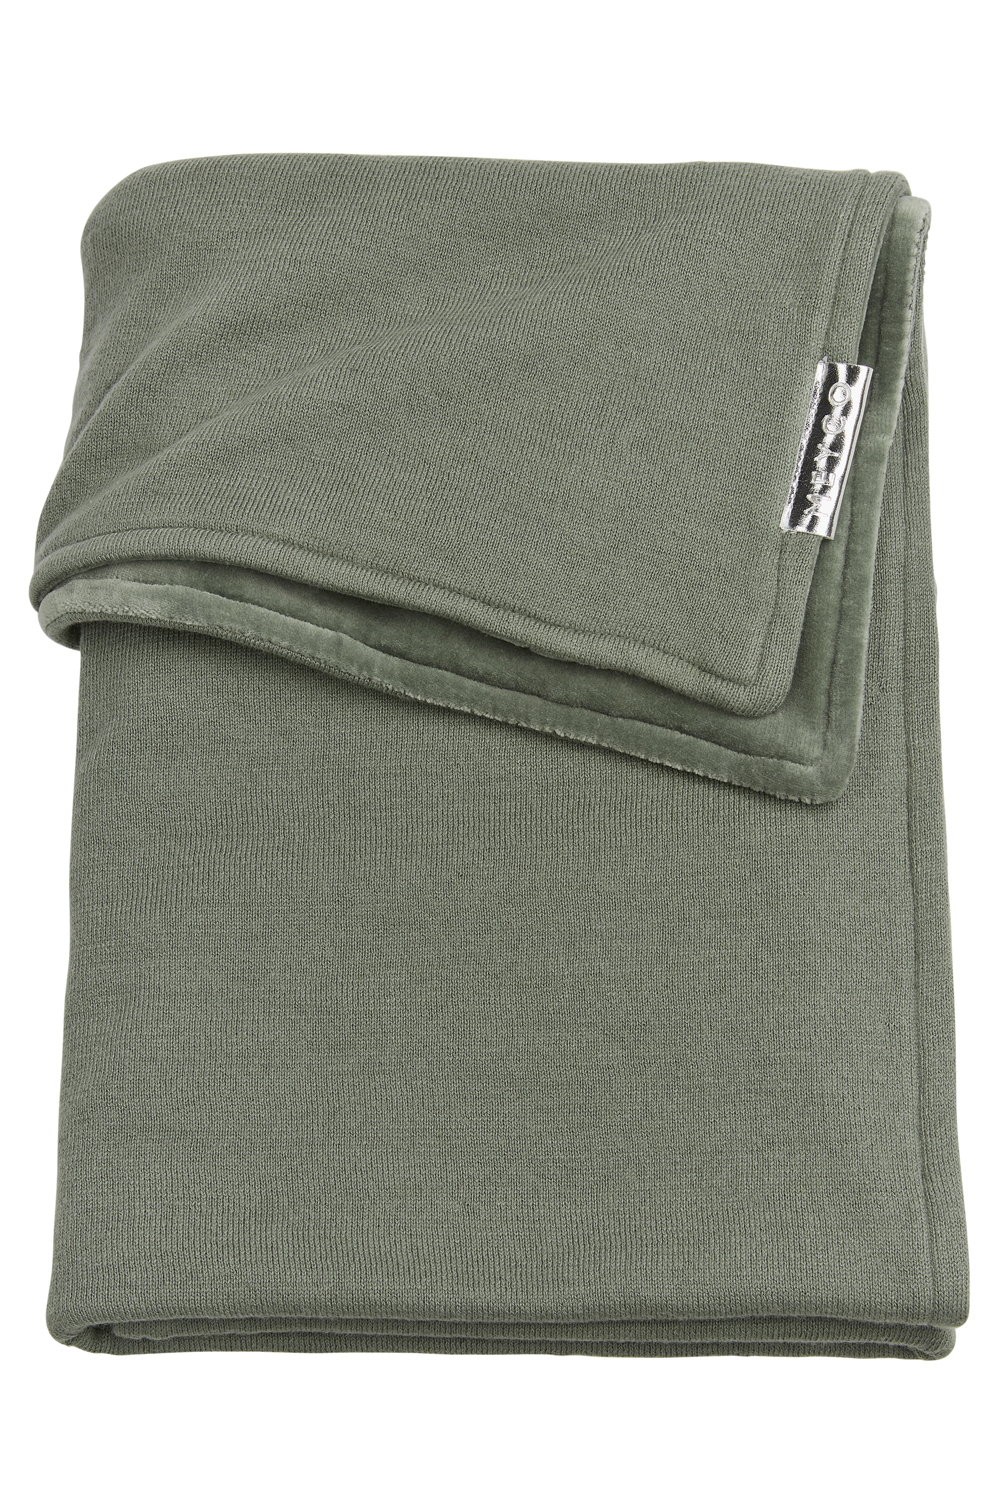 Wiegdeken Velvet Knit Basic - Forest Green - 75x100cm